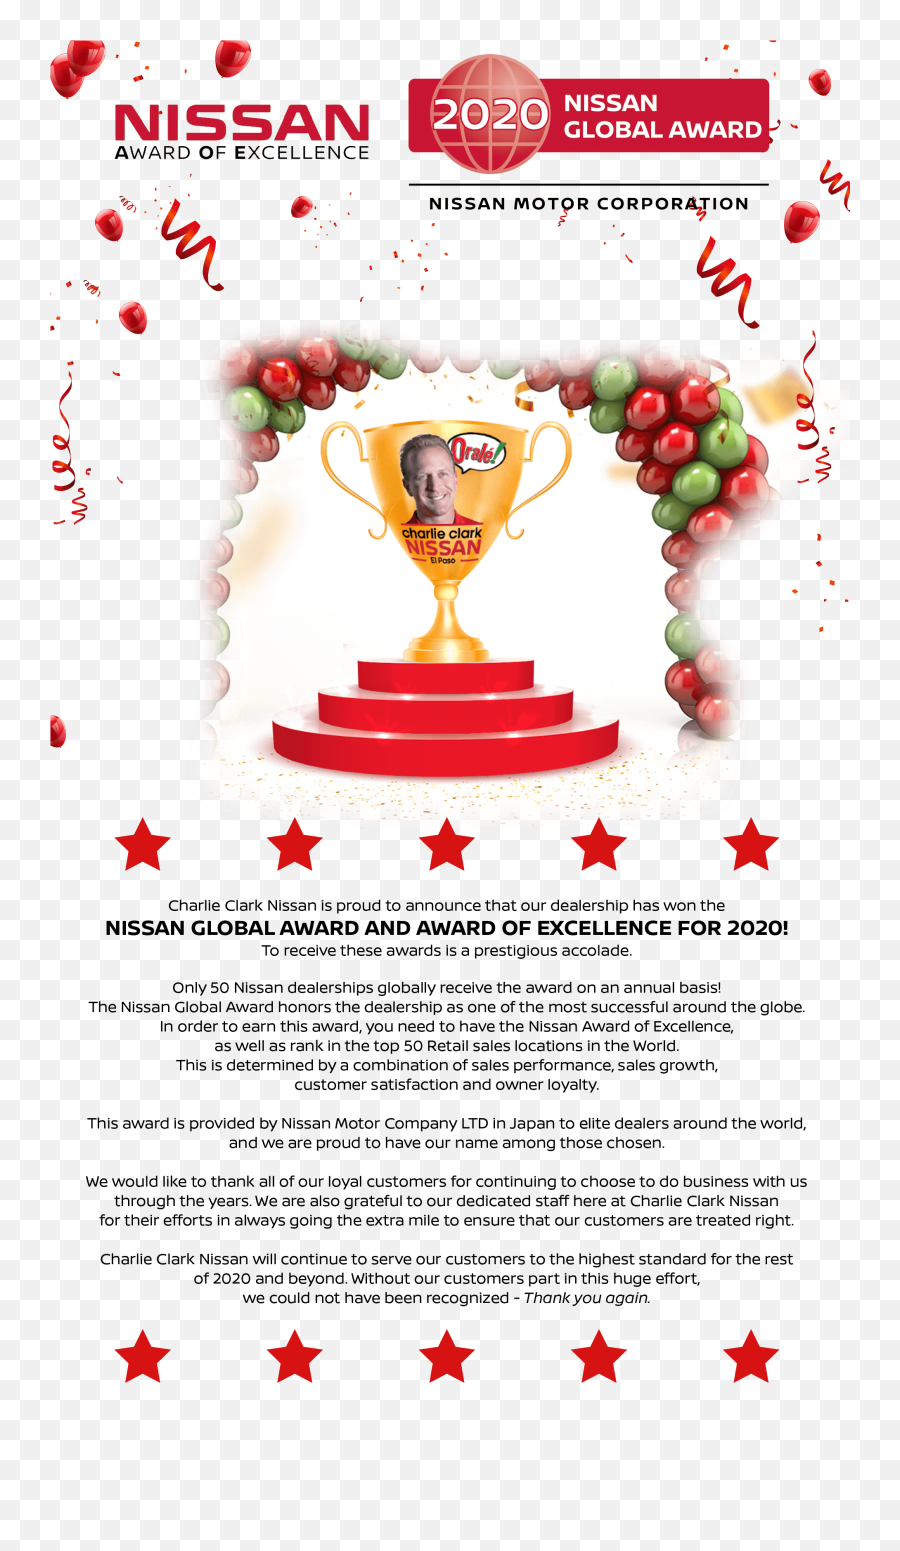 Nissan Award Of Excellence - Charlie Clark Nissan El Paso Emoji,Global Elite Png